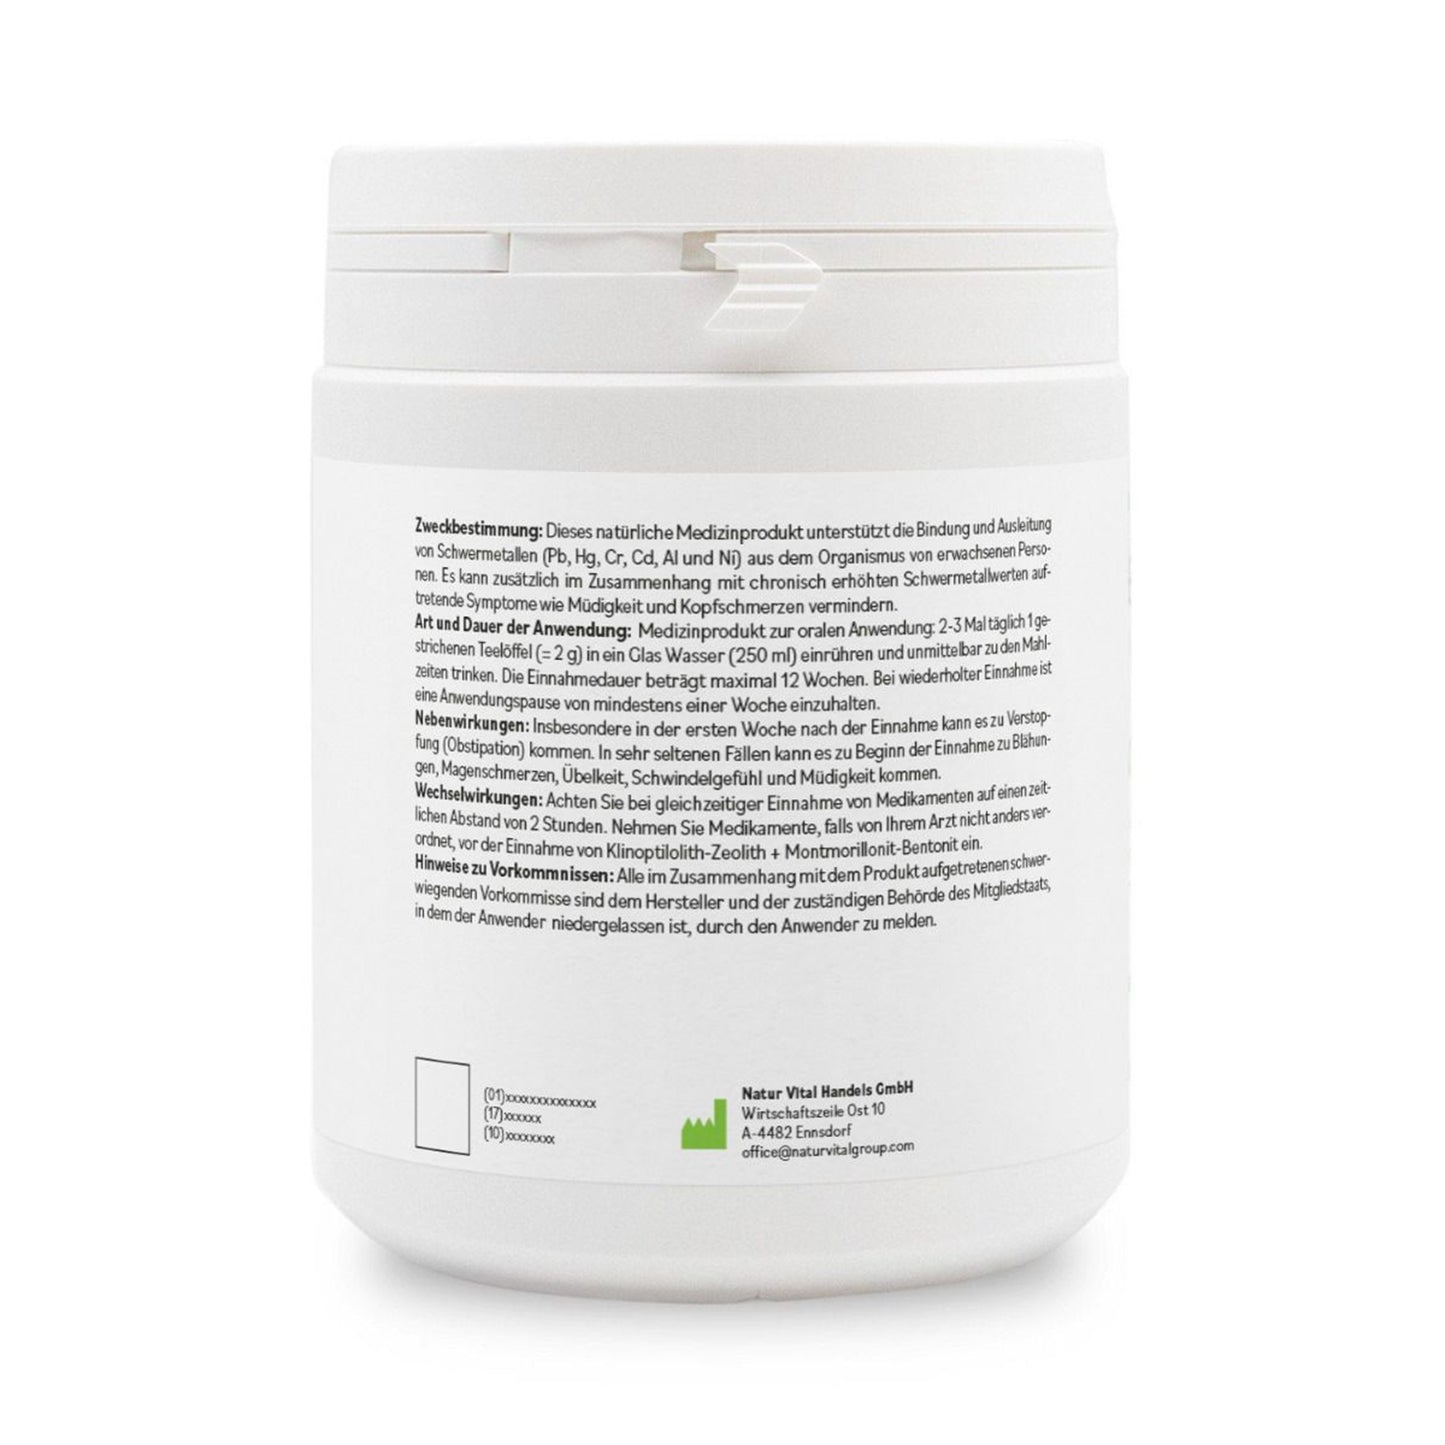 ZeoBent MED Detox-Pulver, 400 g